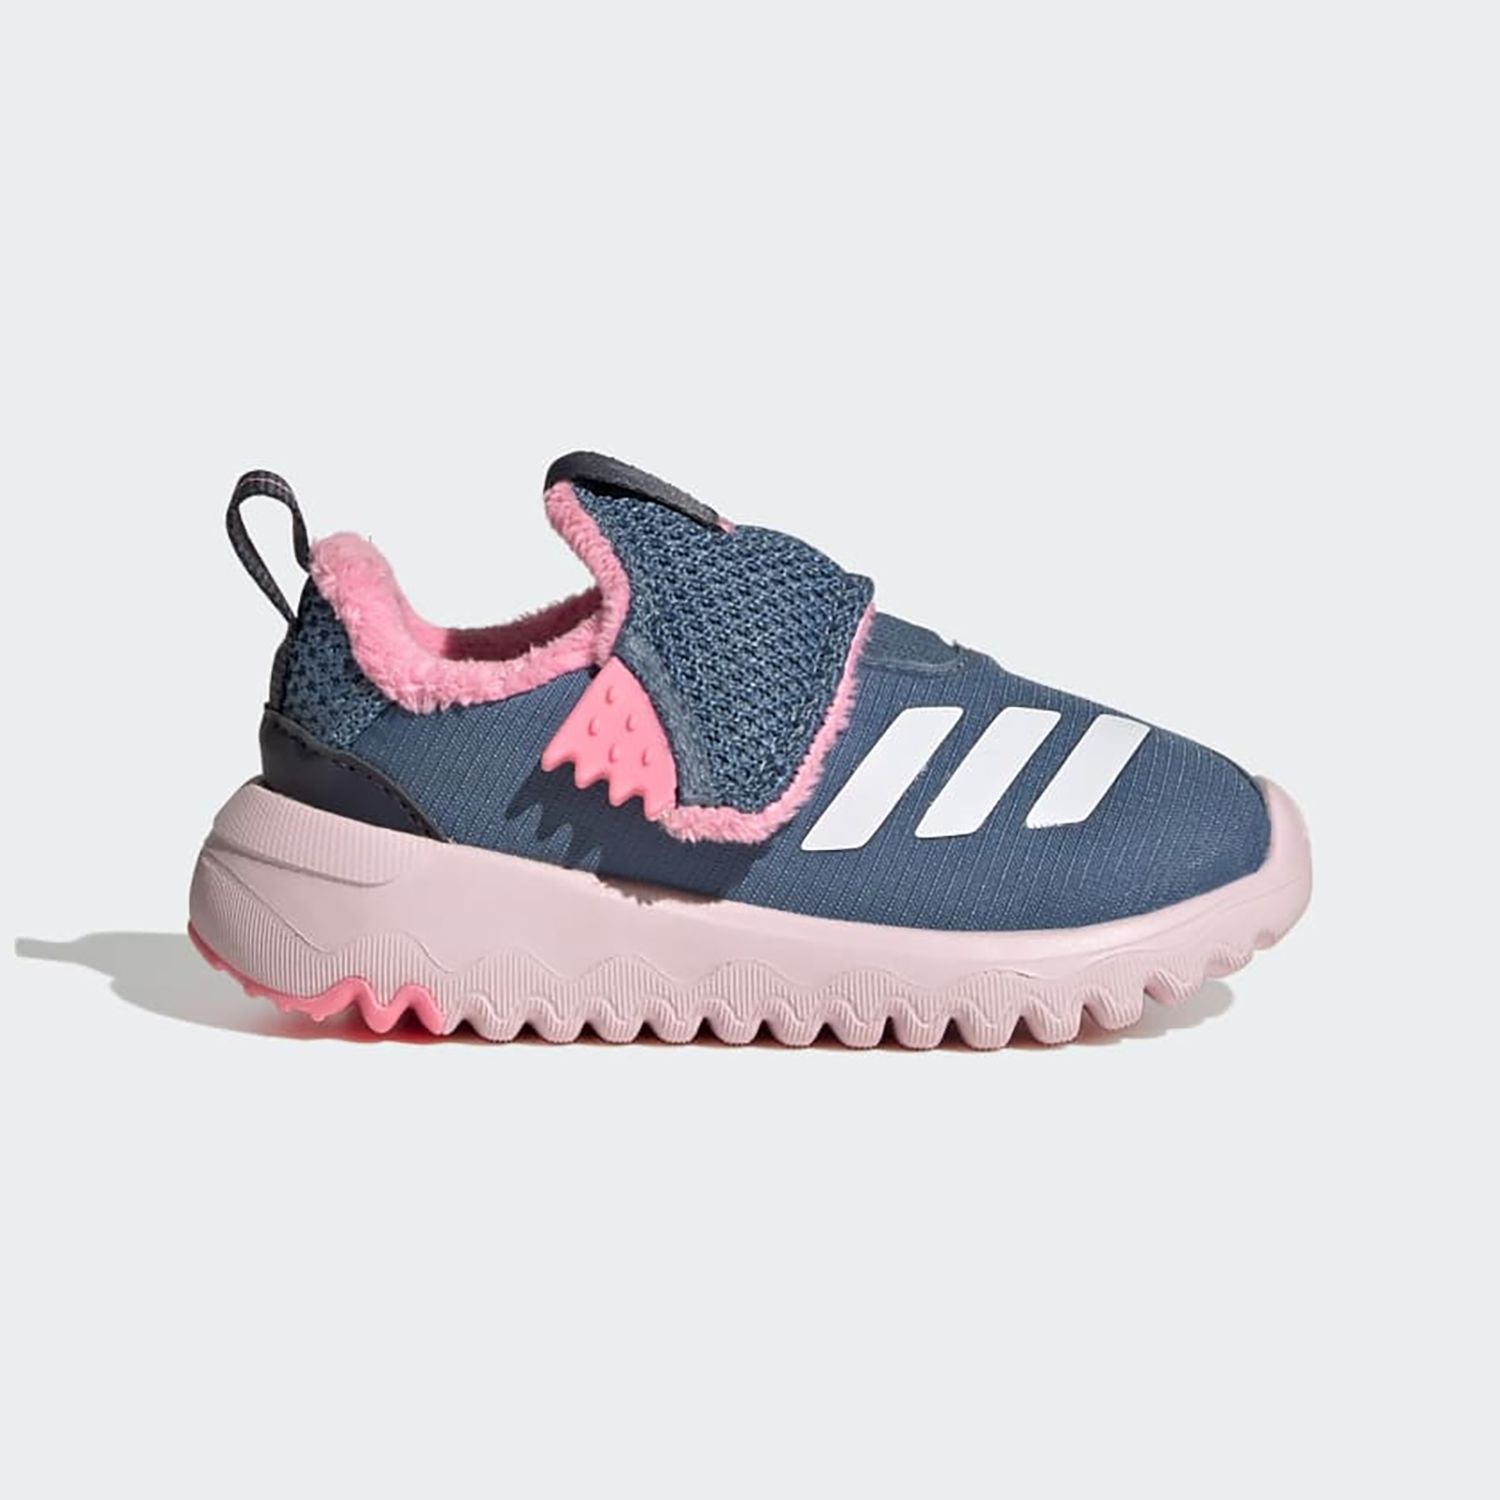 Кроссовки Adidas Suru365 I для девочек, размер 25, GY6677 кроссовки детские adidas runfalcon 3 0 el k синий